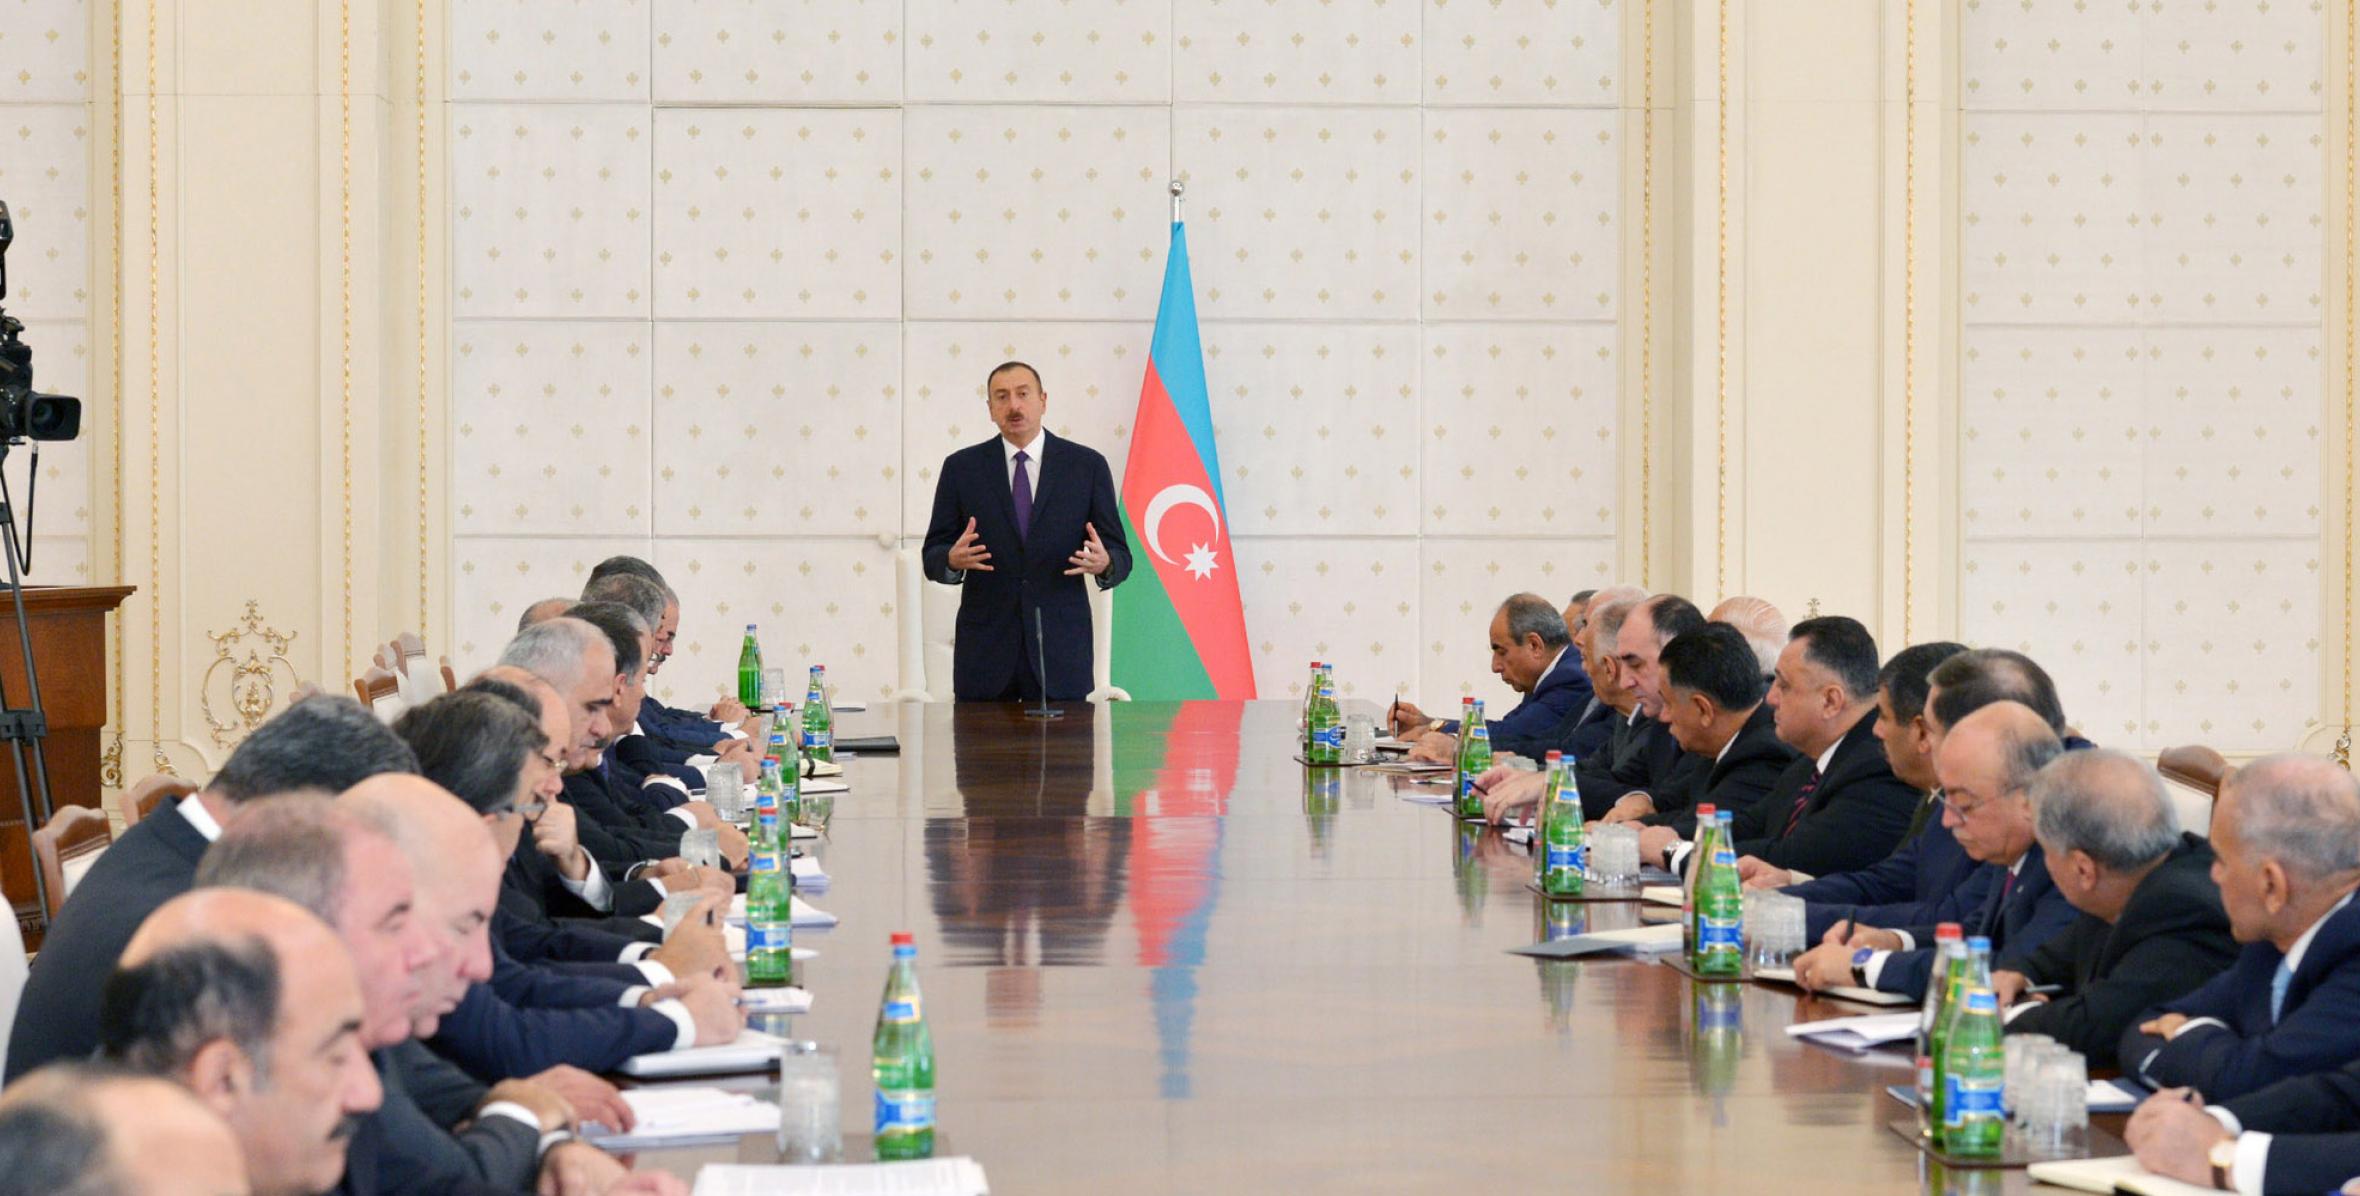 Вступительная речь Ильхама Алиева на заседании Кабинета Министров,посвященном итогам социально-экономического развития за девять месяцев 2014 года и предстоящим задачам